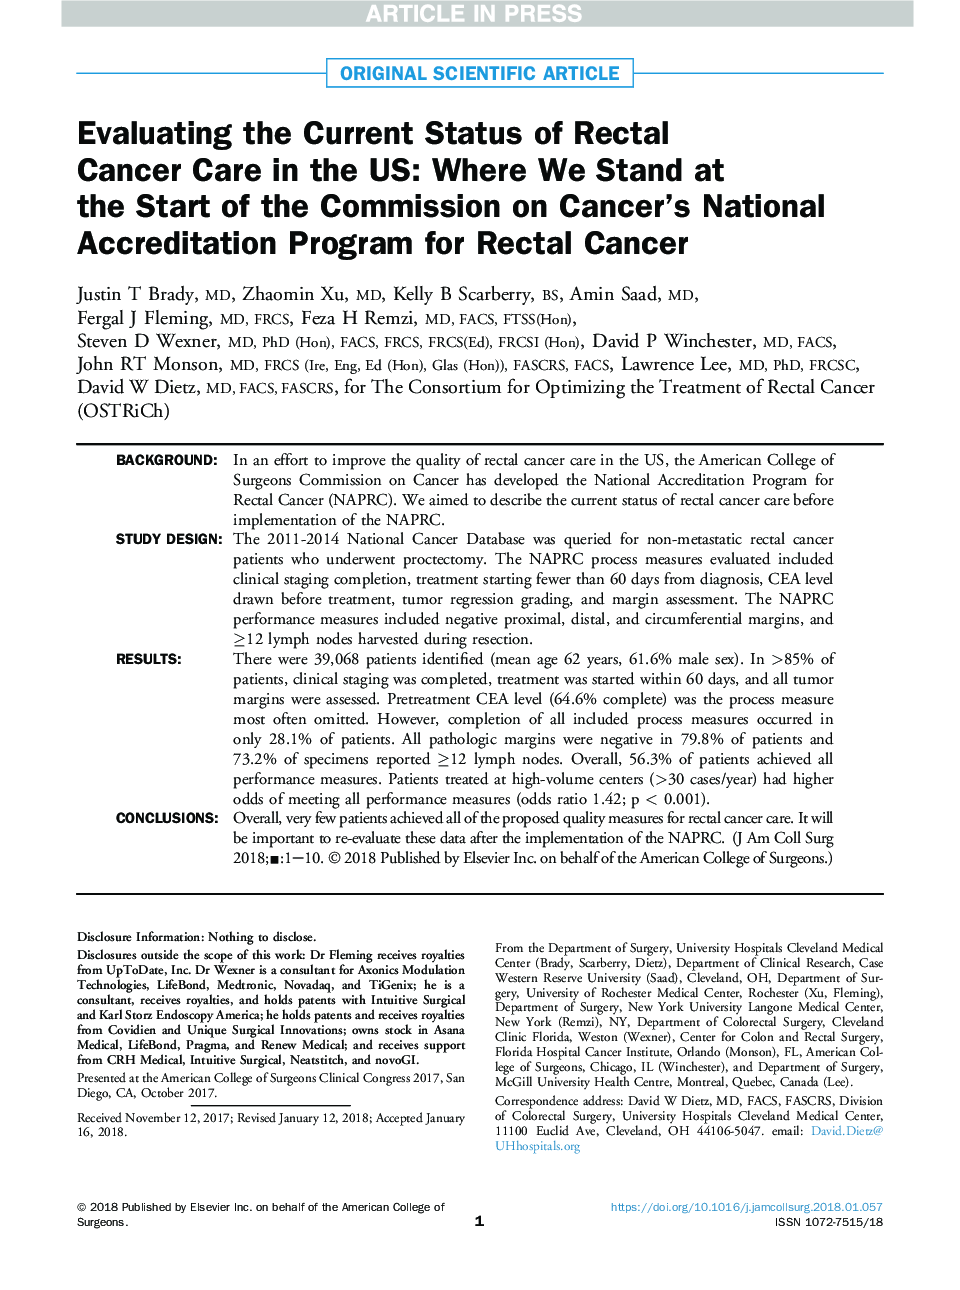 ارزیابی وضعیت کنونی مراقبت از سرطان رکتوم در ایالات متحده: جایی که ما در شروع کمیسیون برنامه ملی اعتباربخشی سرطان در سرطان رکتوم 